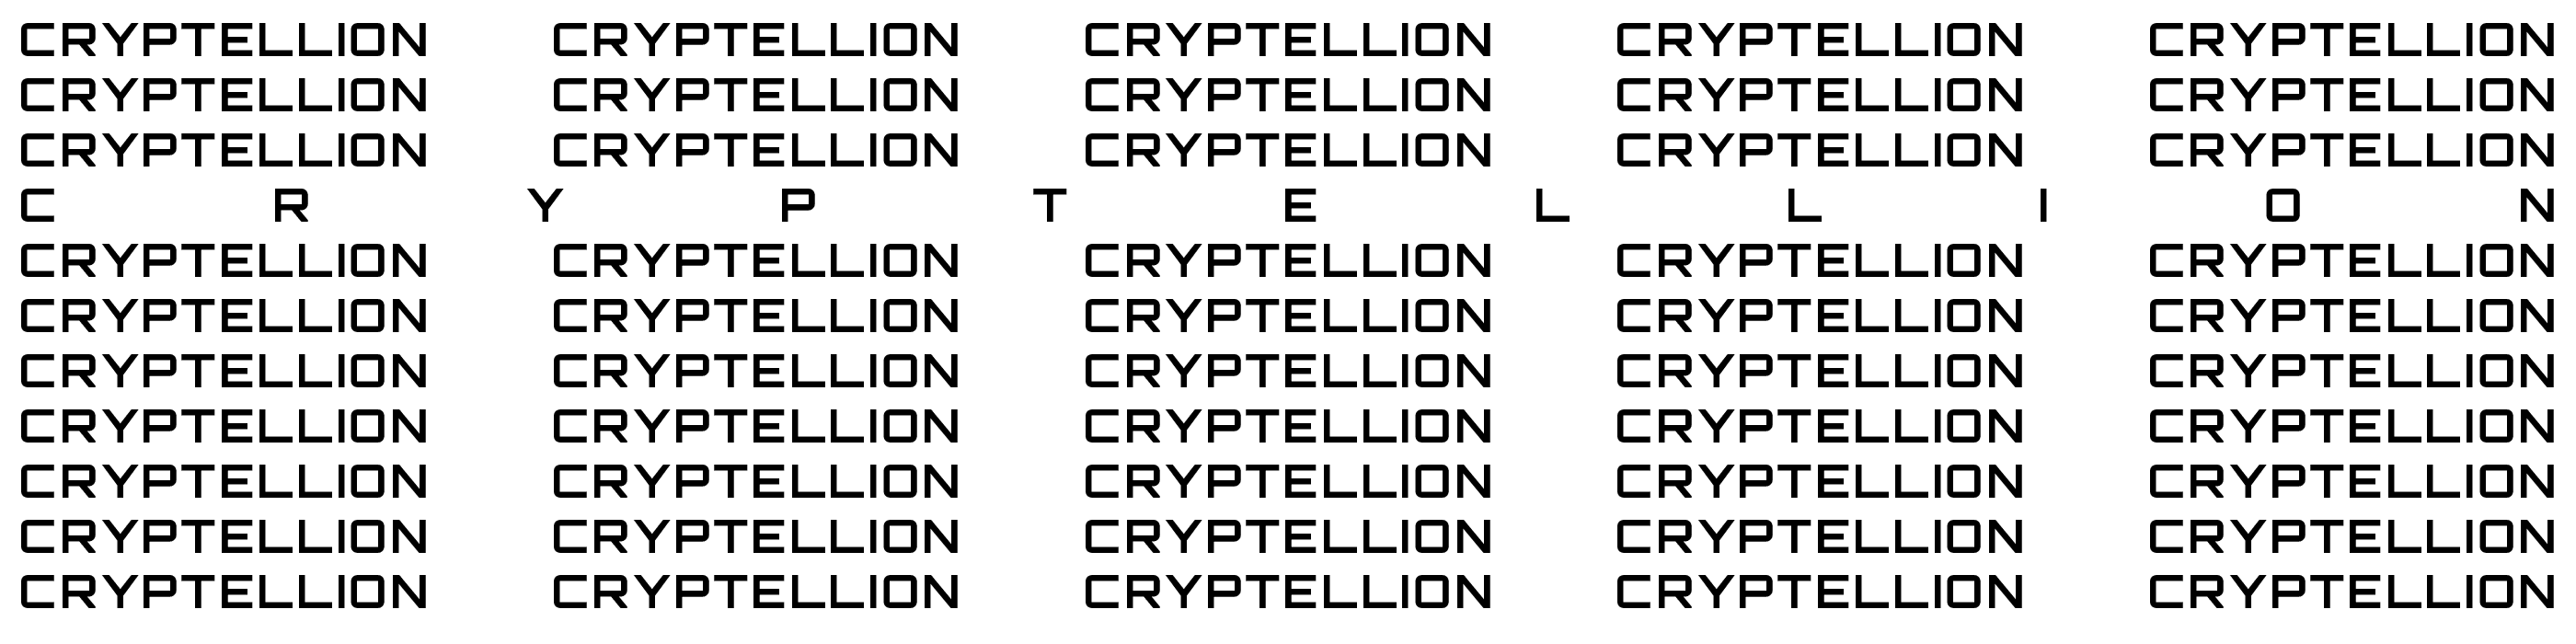 Cryptellion 橫幅